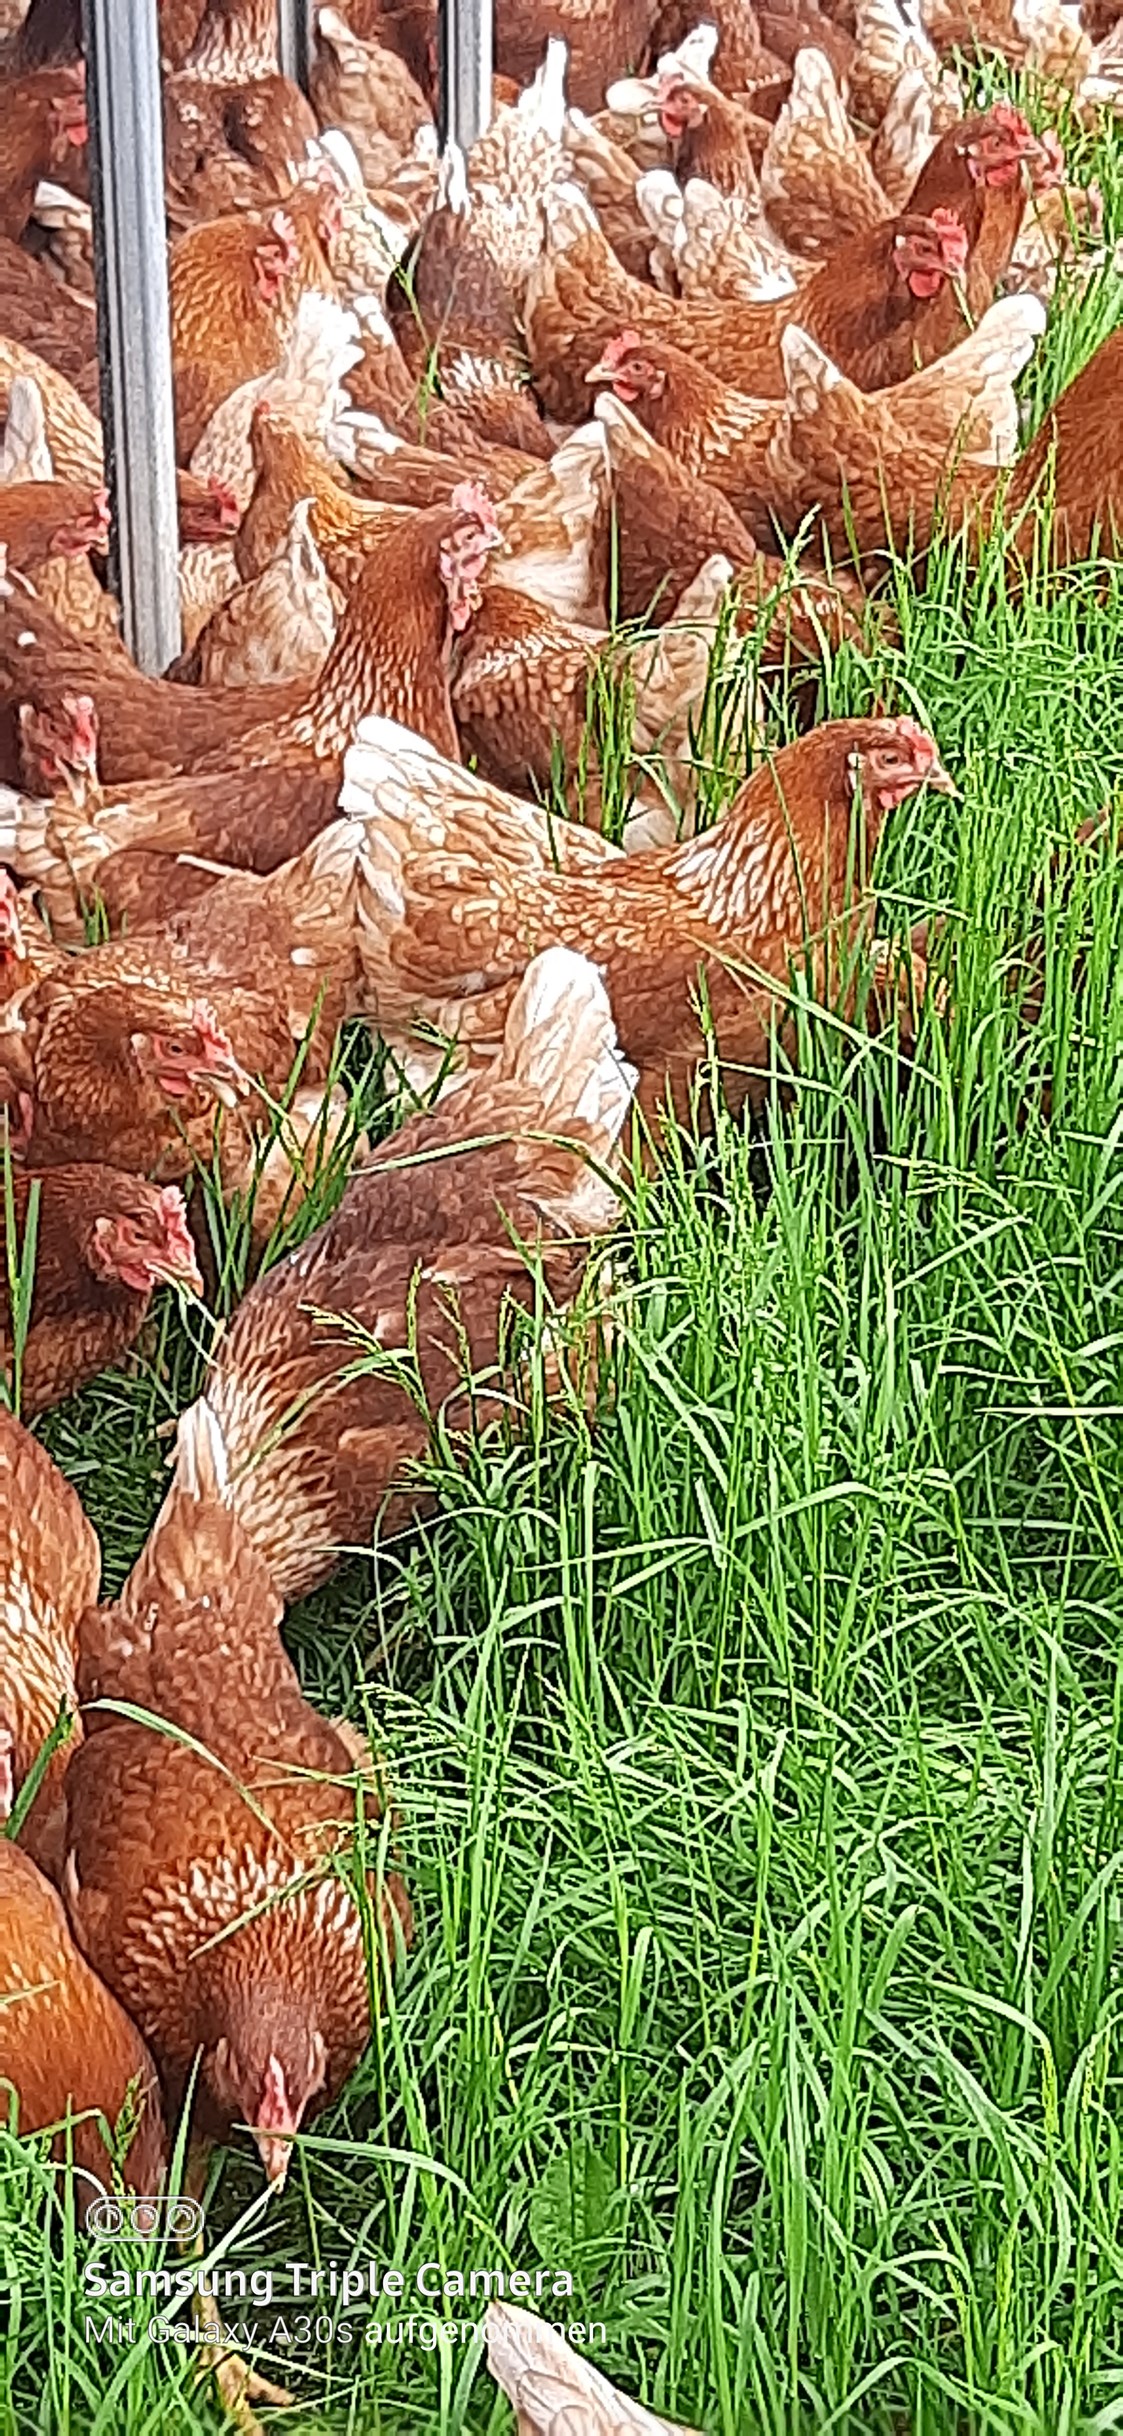 Wohnmobilstellplatz: Unsere Hühner.
Ca. 700 Legehühner mit 13 Hähne dazu.
Sie versorgen uns mit frische Bio Eier. - Biohof Fraiss  / Sepplbauer 